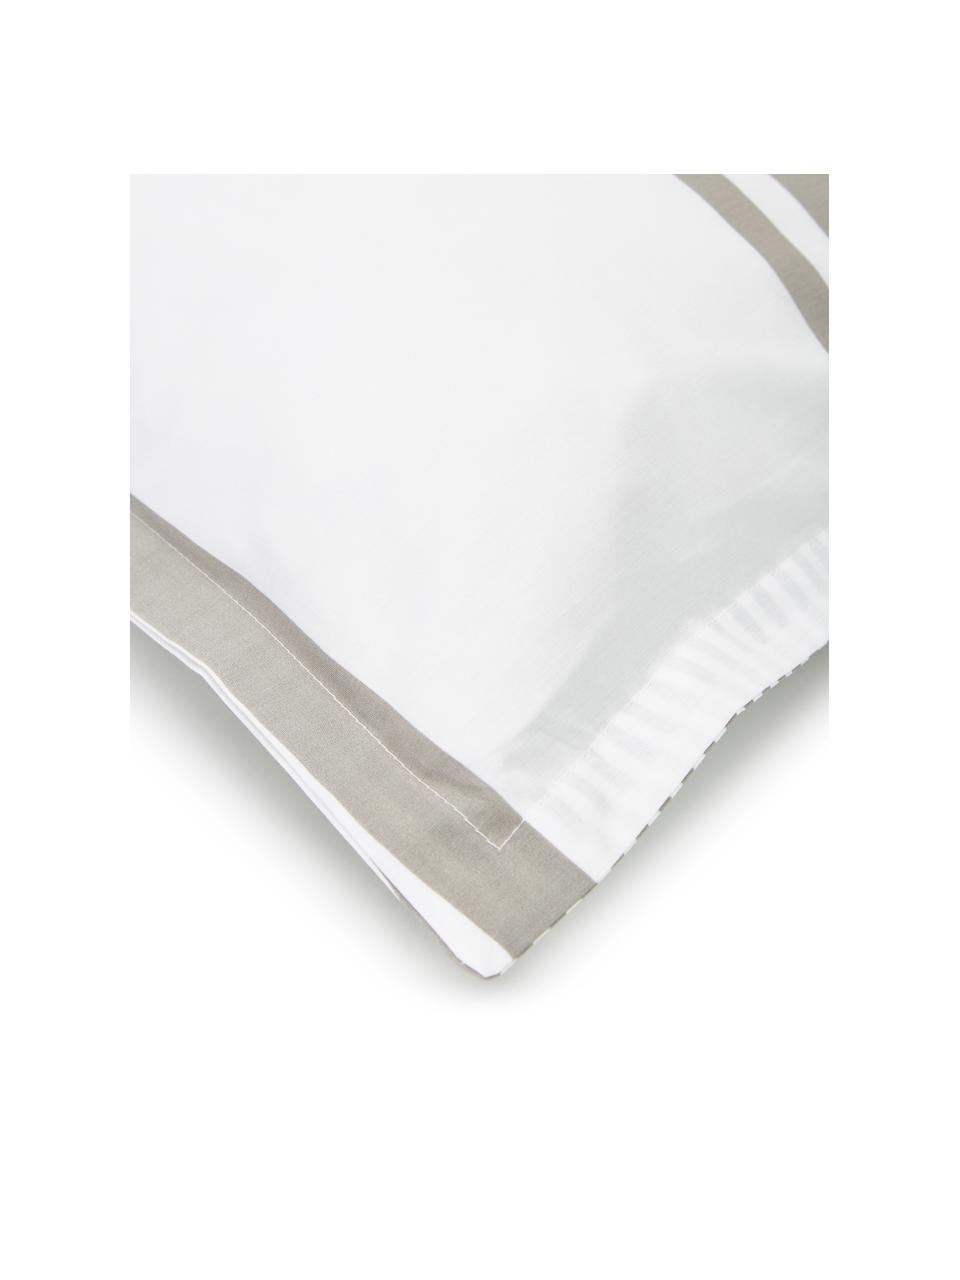 Dwustronna poszewka na poduszkę z organicznego perkalu z efektem sprania Kinsley, Beżowy, biały, S 40 x D 80 cm